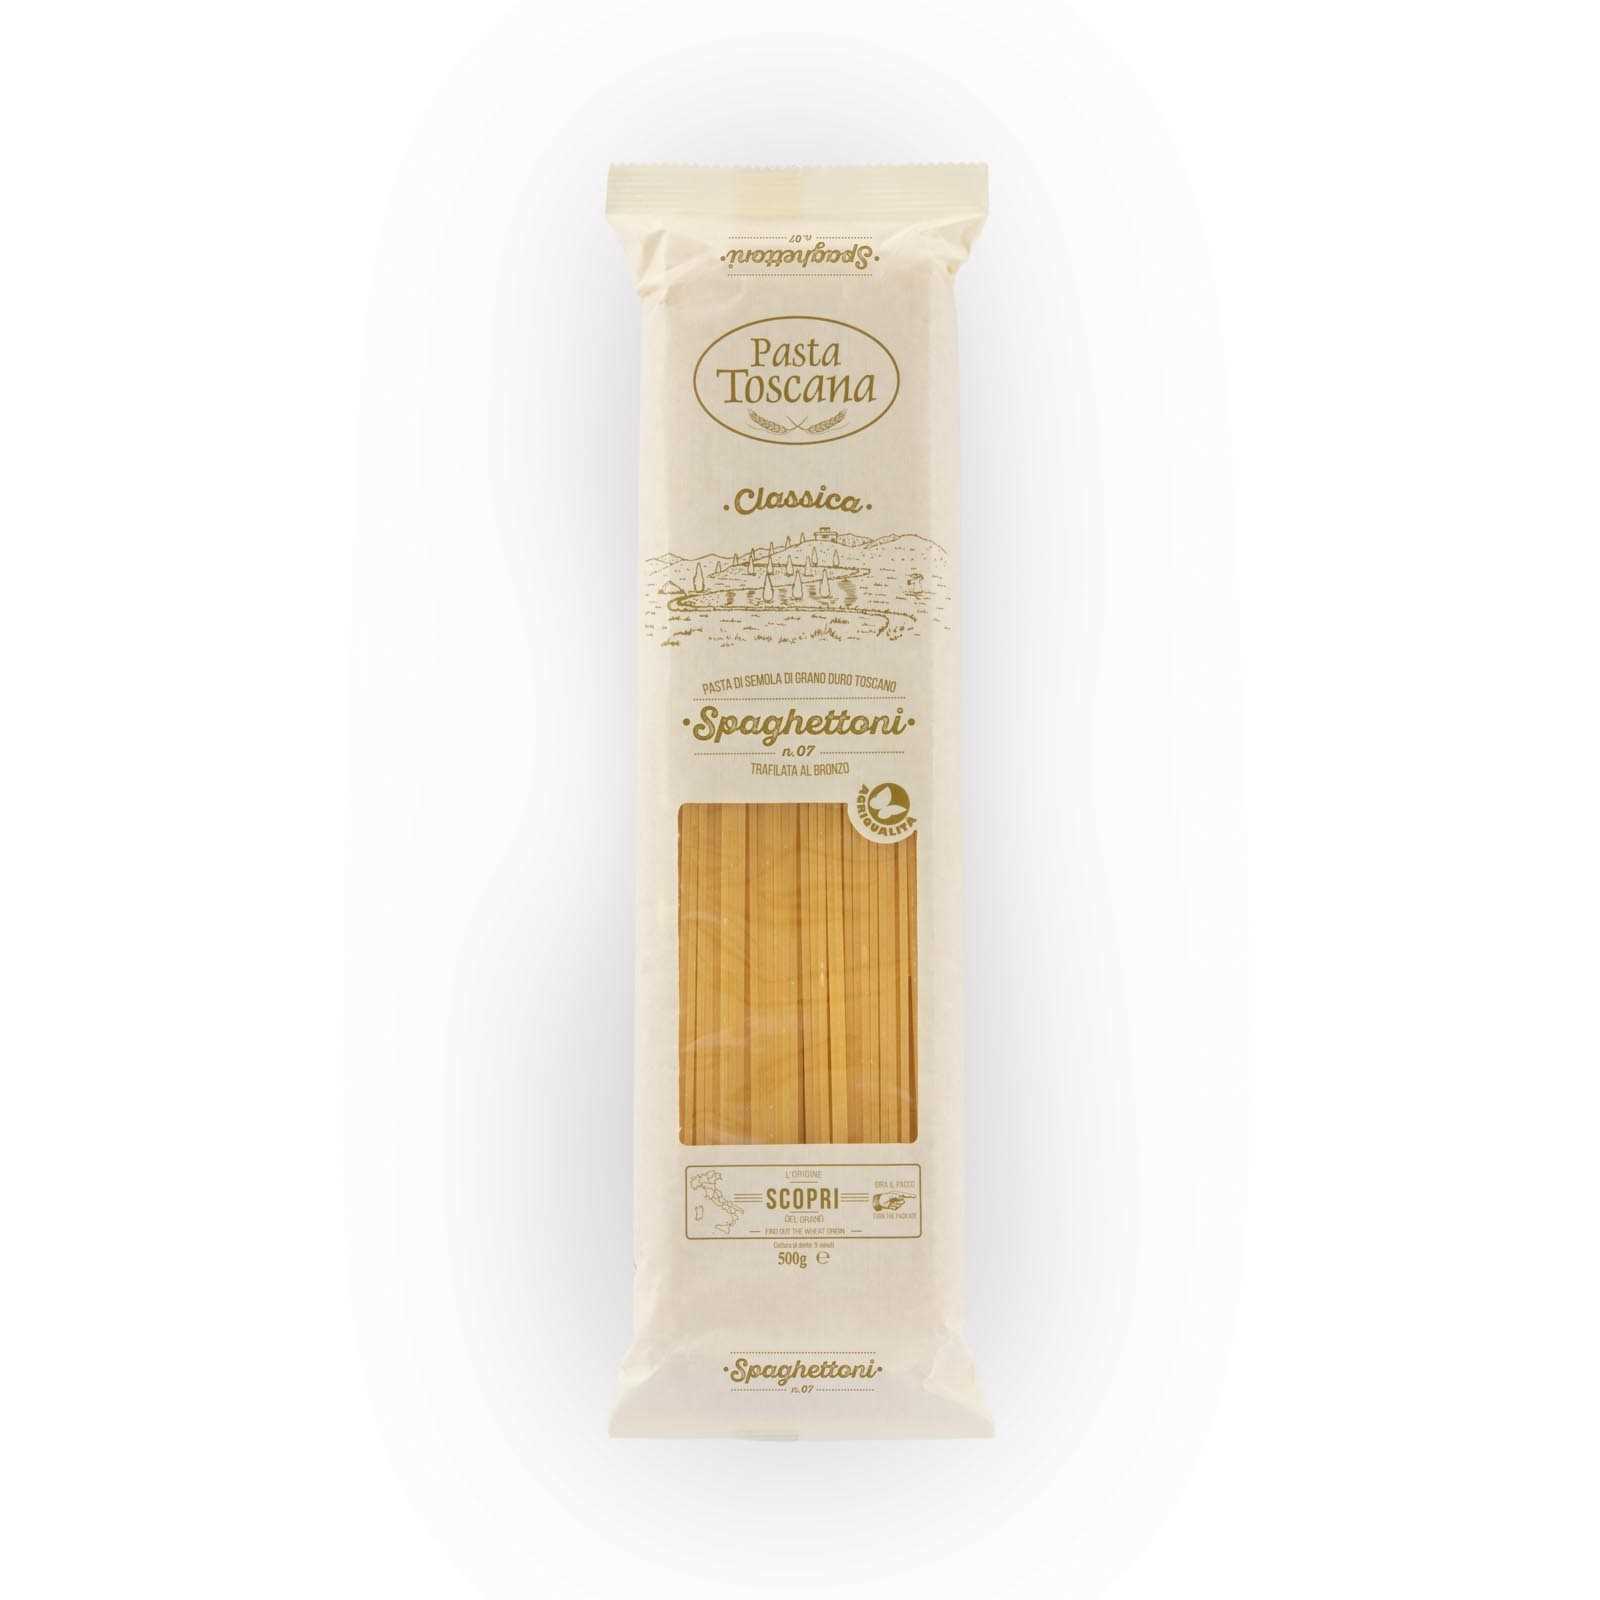 Spaghetti classici spessi di grano duro toscano, trafilati al bronzo ad essiccazione lenta.